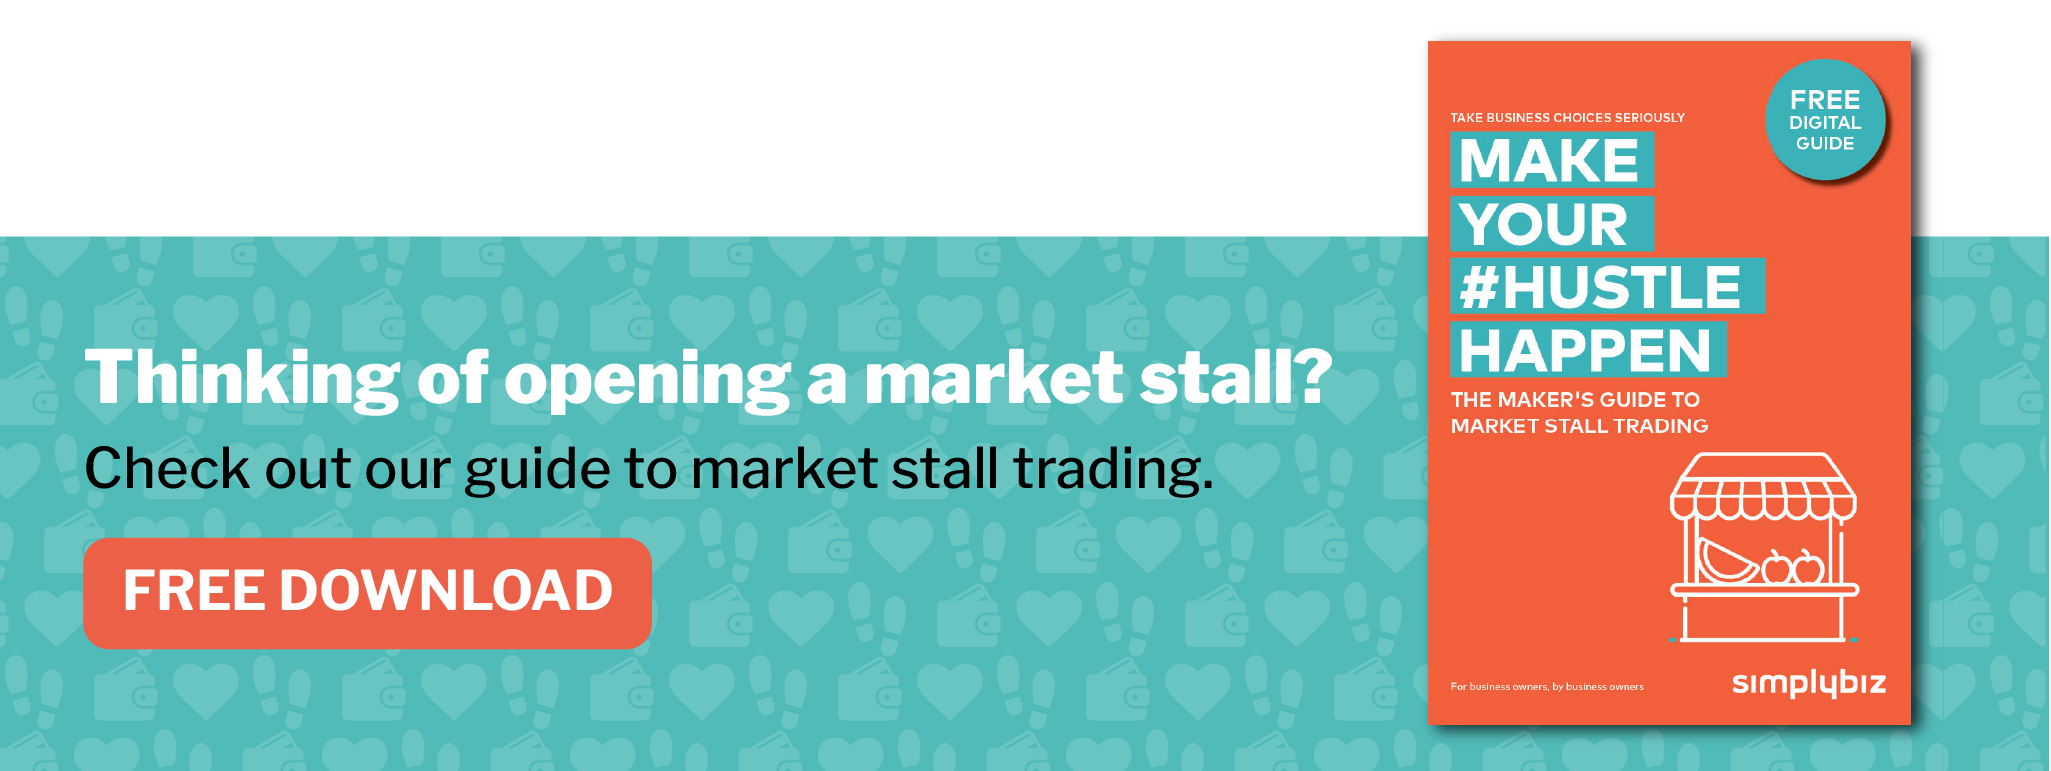 market guide banner.jpg